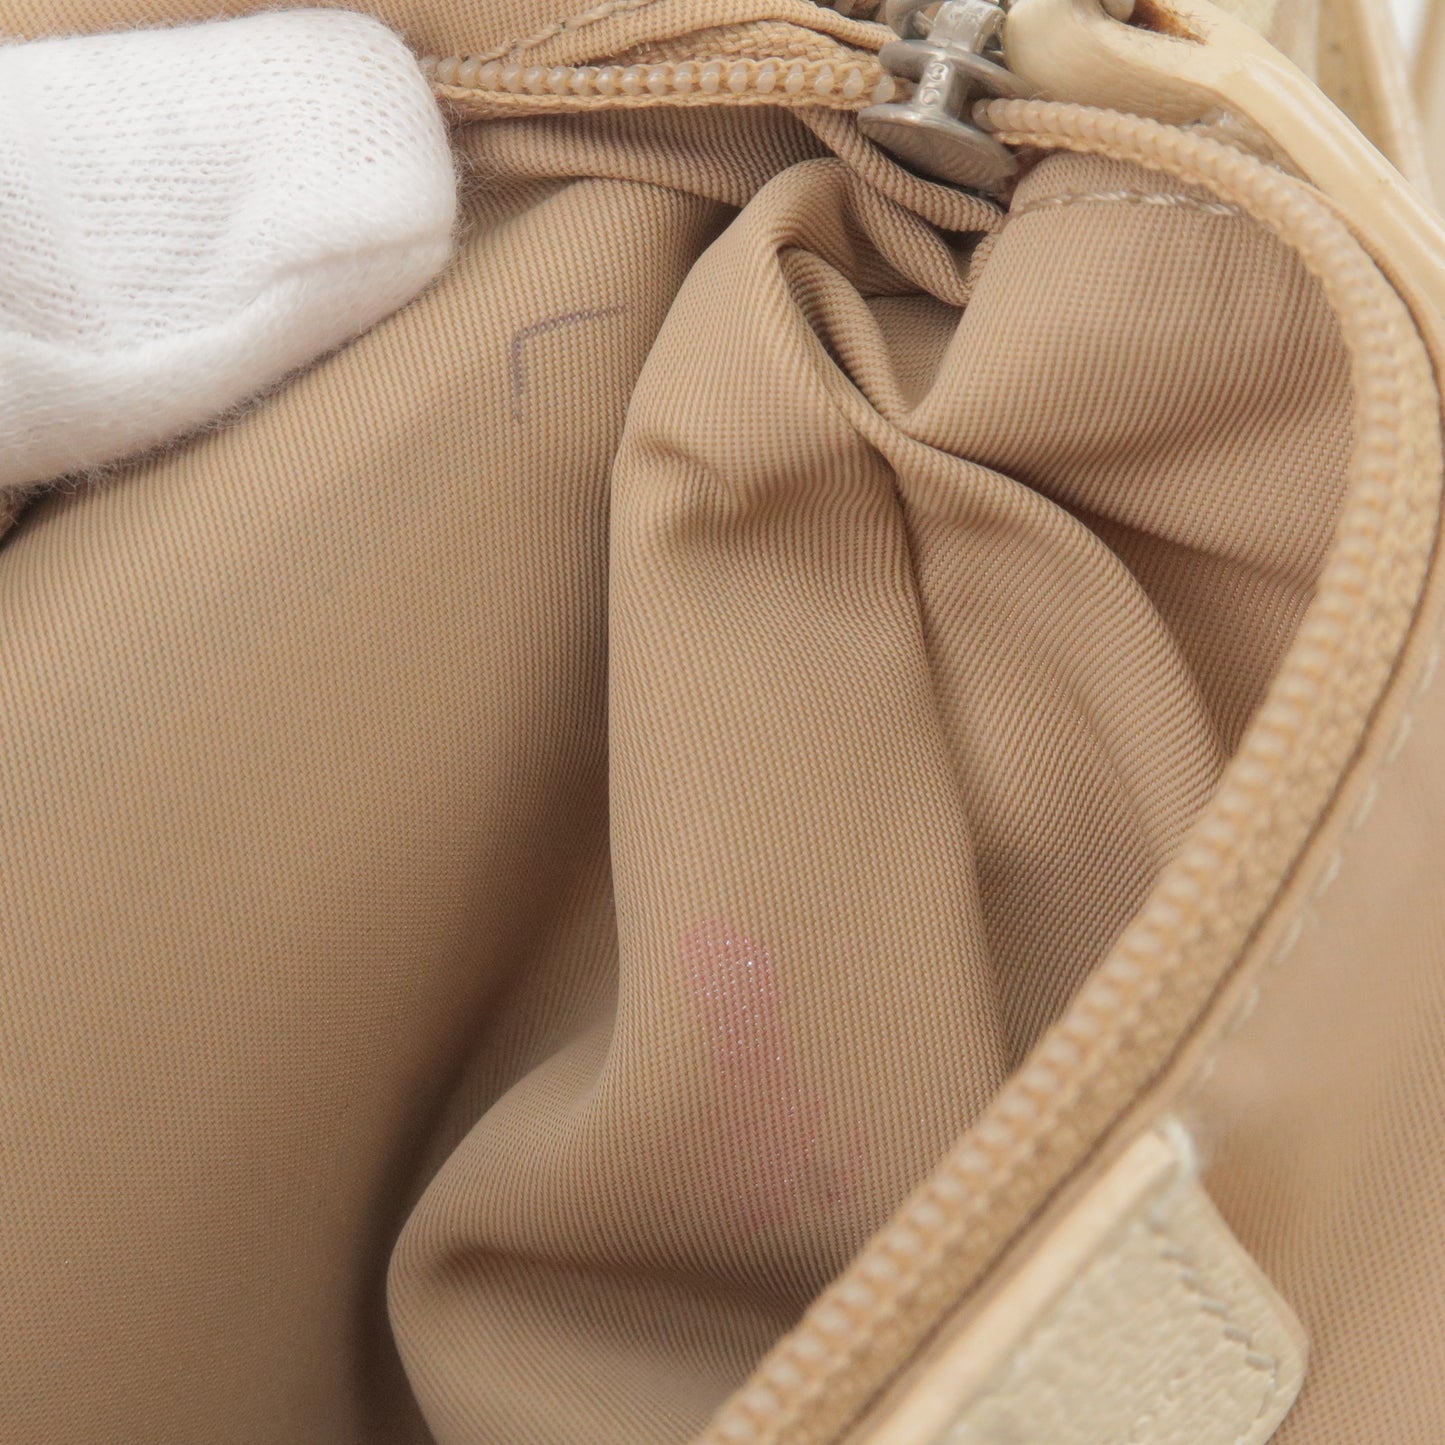 Christian Dior Trotter PVC Leather Embroidered Shoulder Bag